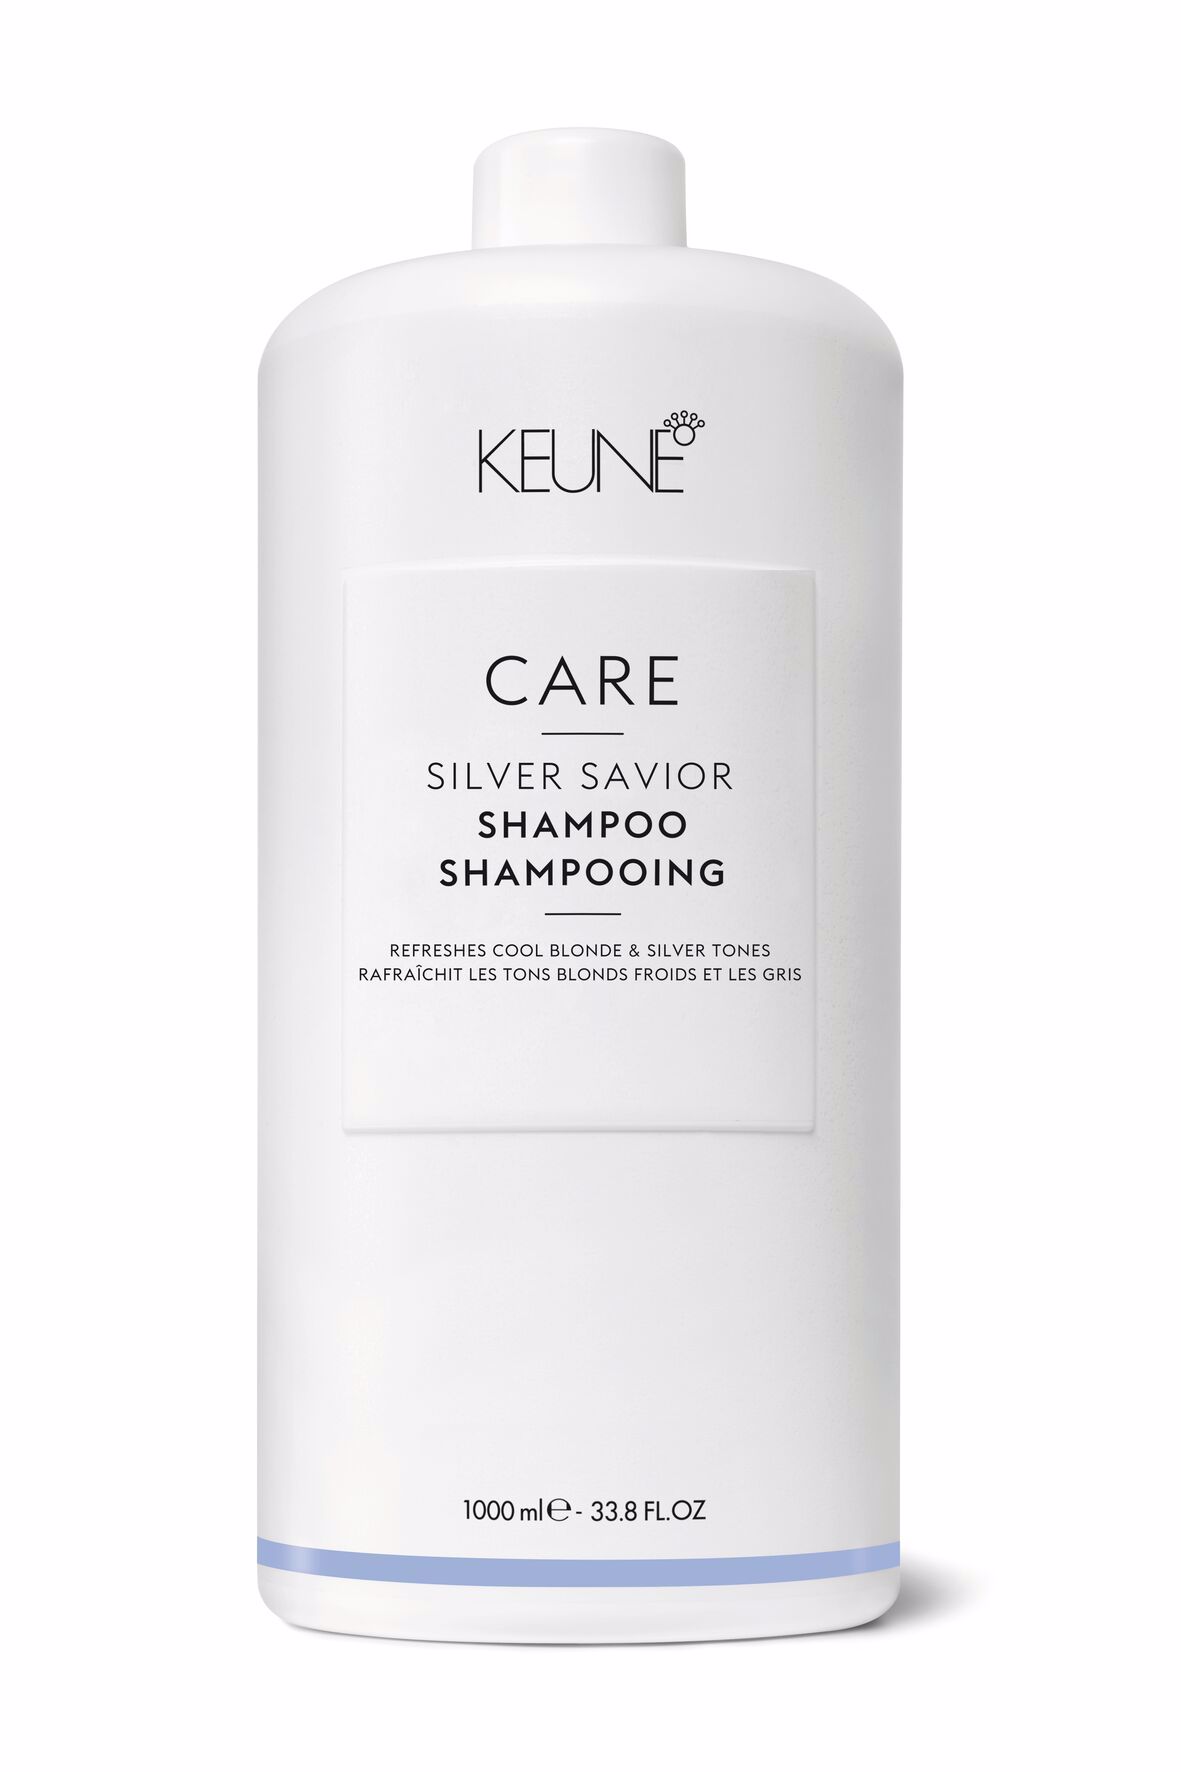 Entdecke Care Silver Savior Shampoo für blondes Haar. Es schützt die Farbe, neutralisiert Gelbtöne und pflegt mit Provitamin B5 für geschmeidiges Haar. Weizenproteine sorgen für mehr Volumen. Keune.ch